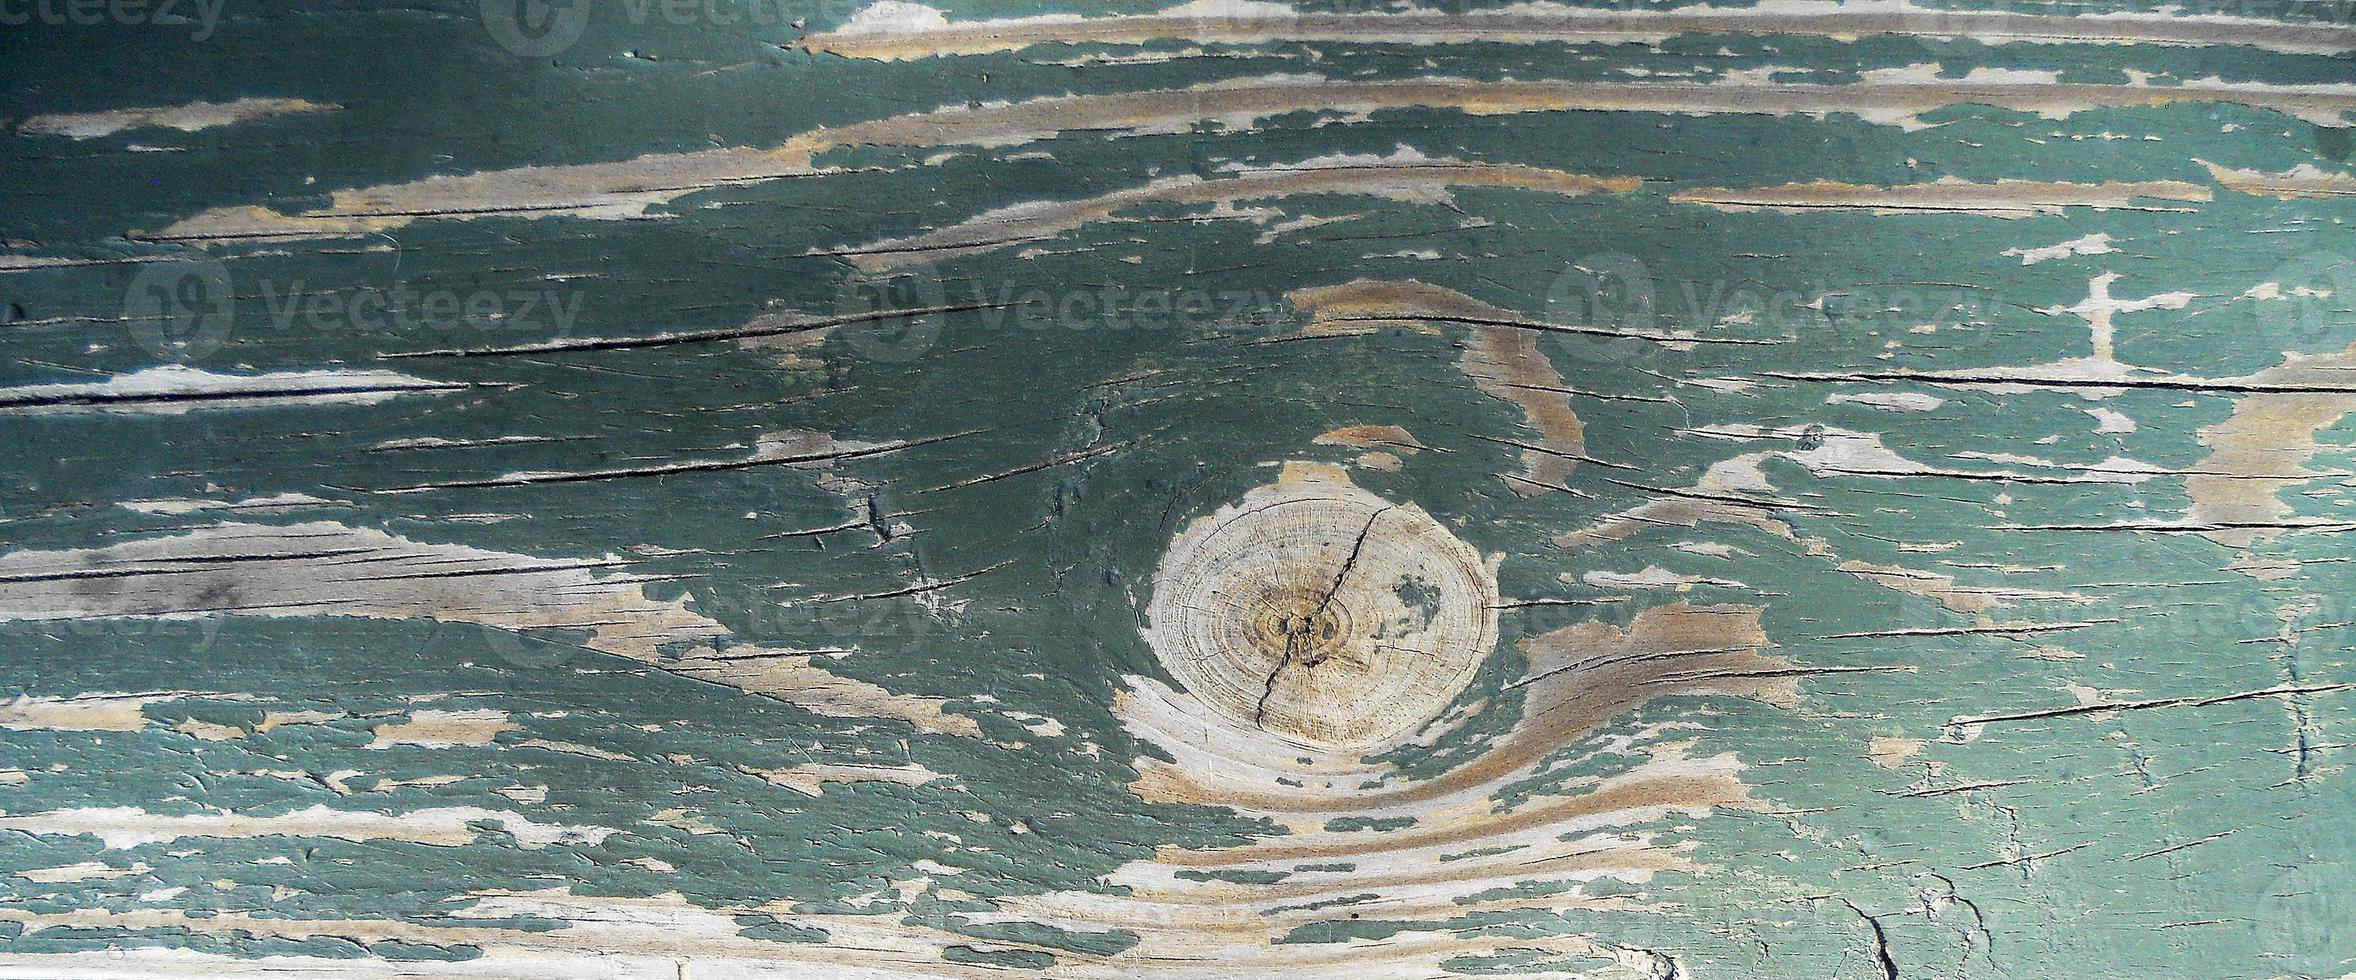 texture di sfondo legno marrone, frattura del primo piano foto